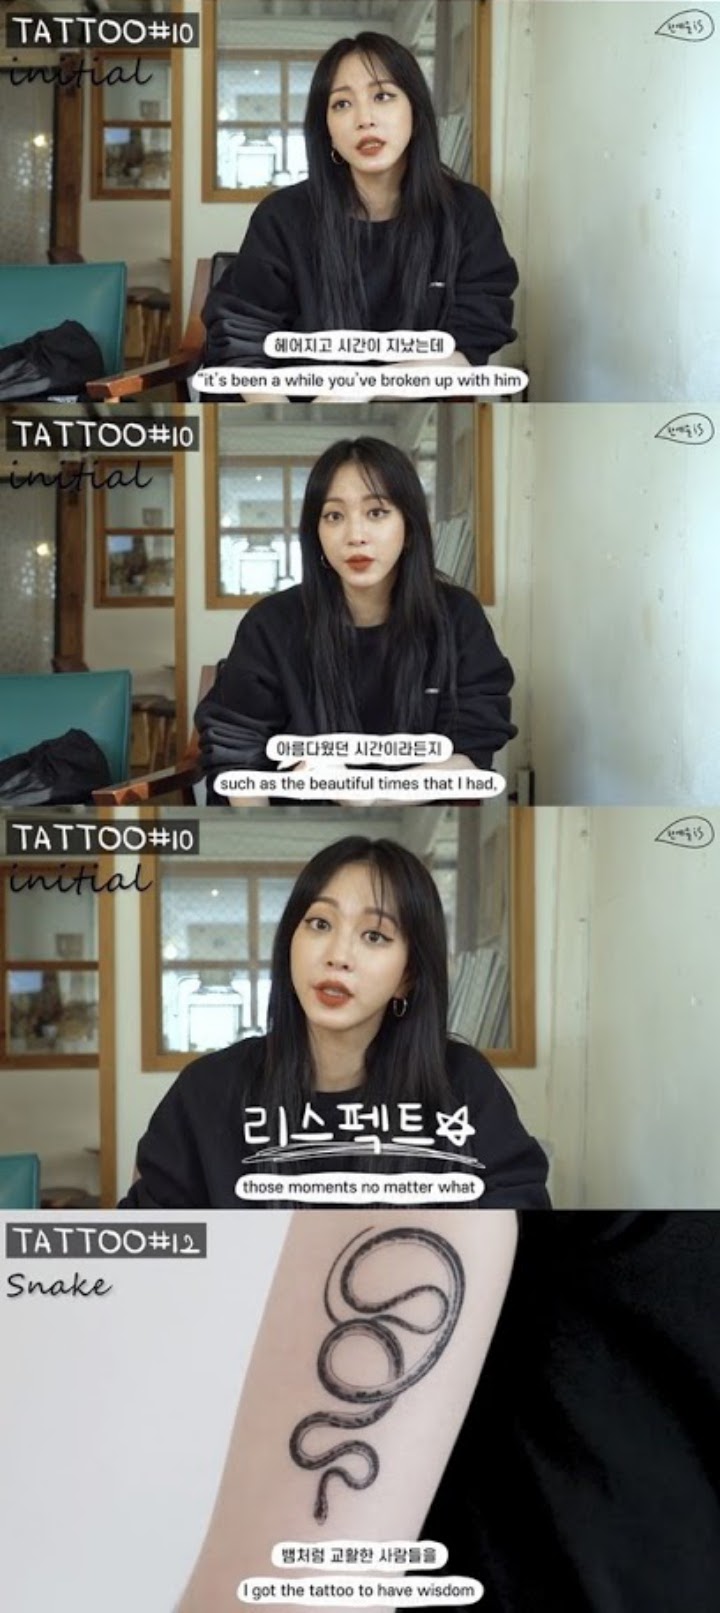 Han Ye Seul Tunjukkan Tato Mantan Pacar, Netizen Curiga Kondisi Mental Kurang Sehat